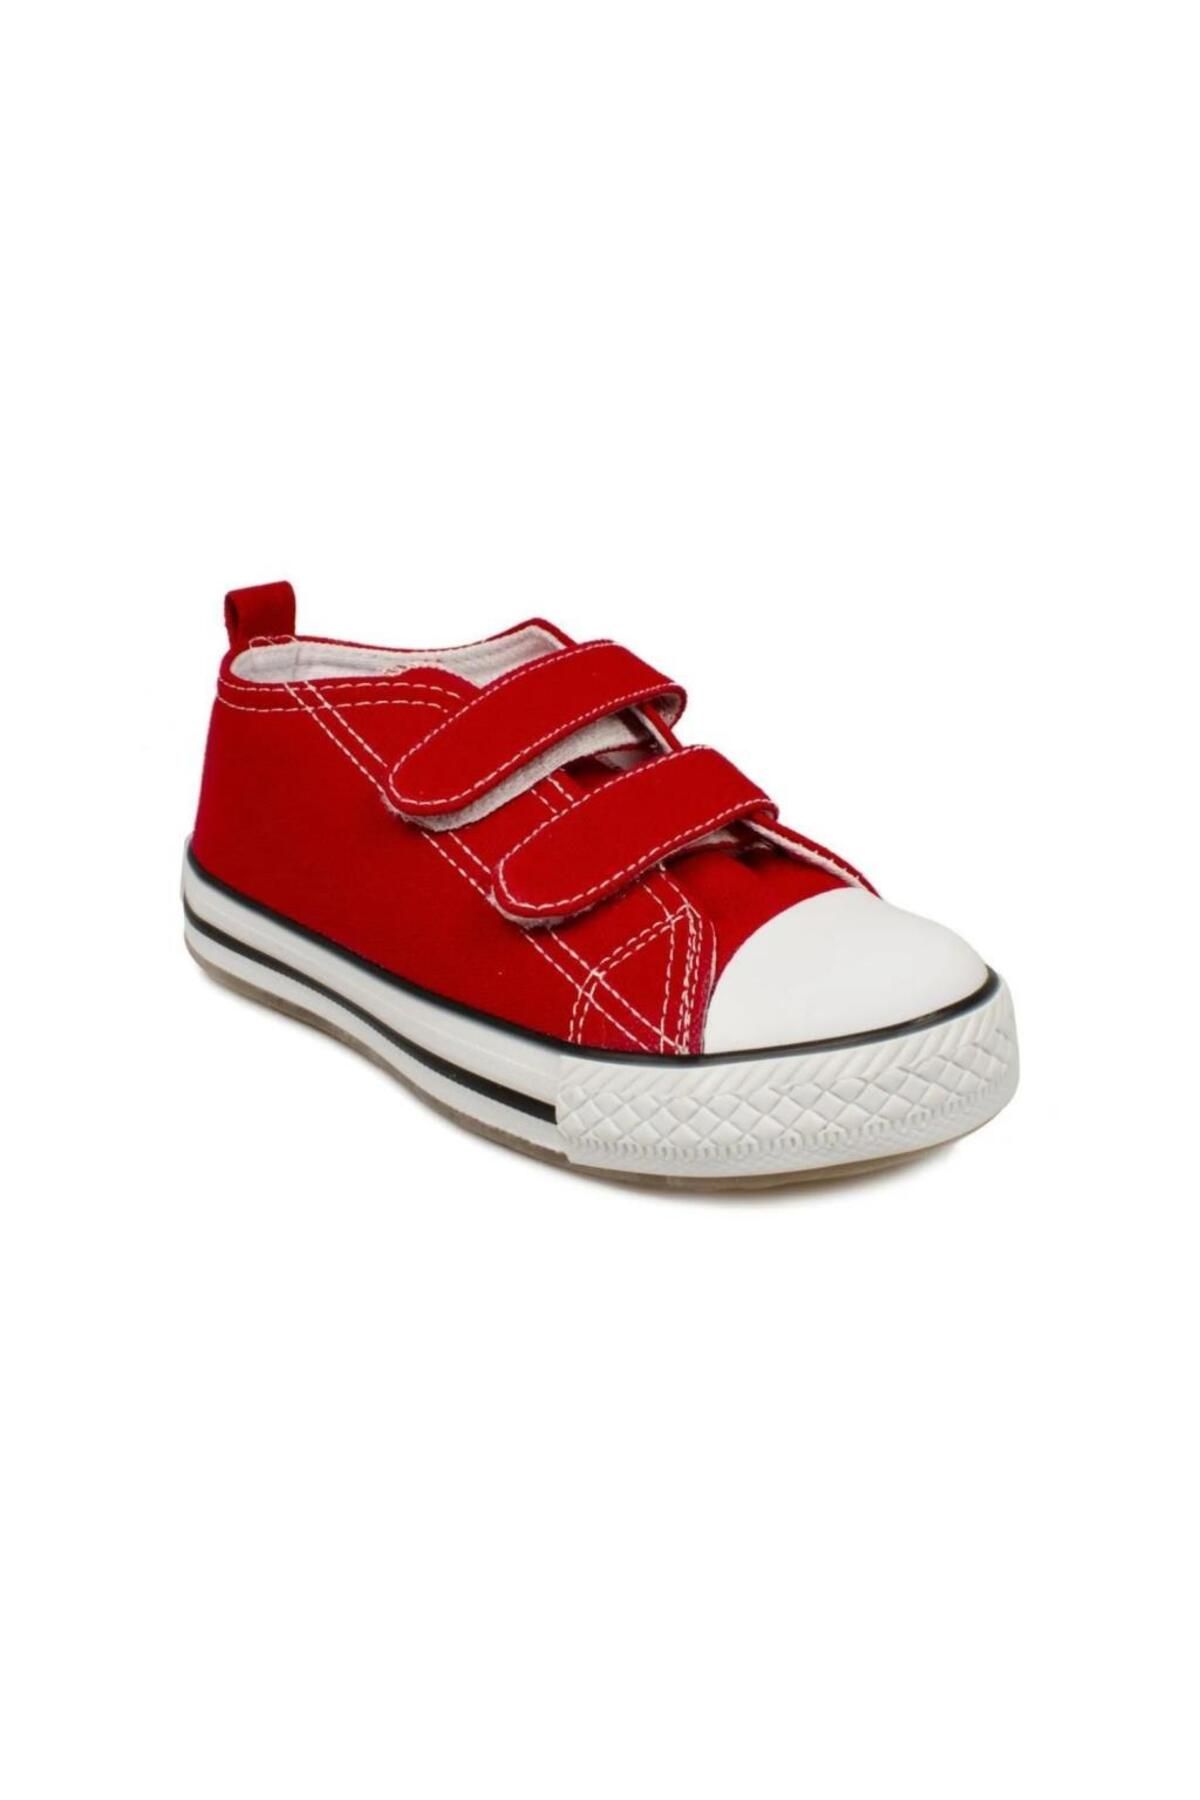 Vicco 925.b20y.150 Pino Ayakkabı Kırmızı